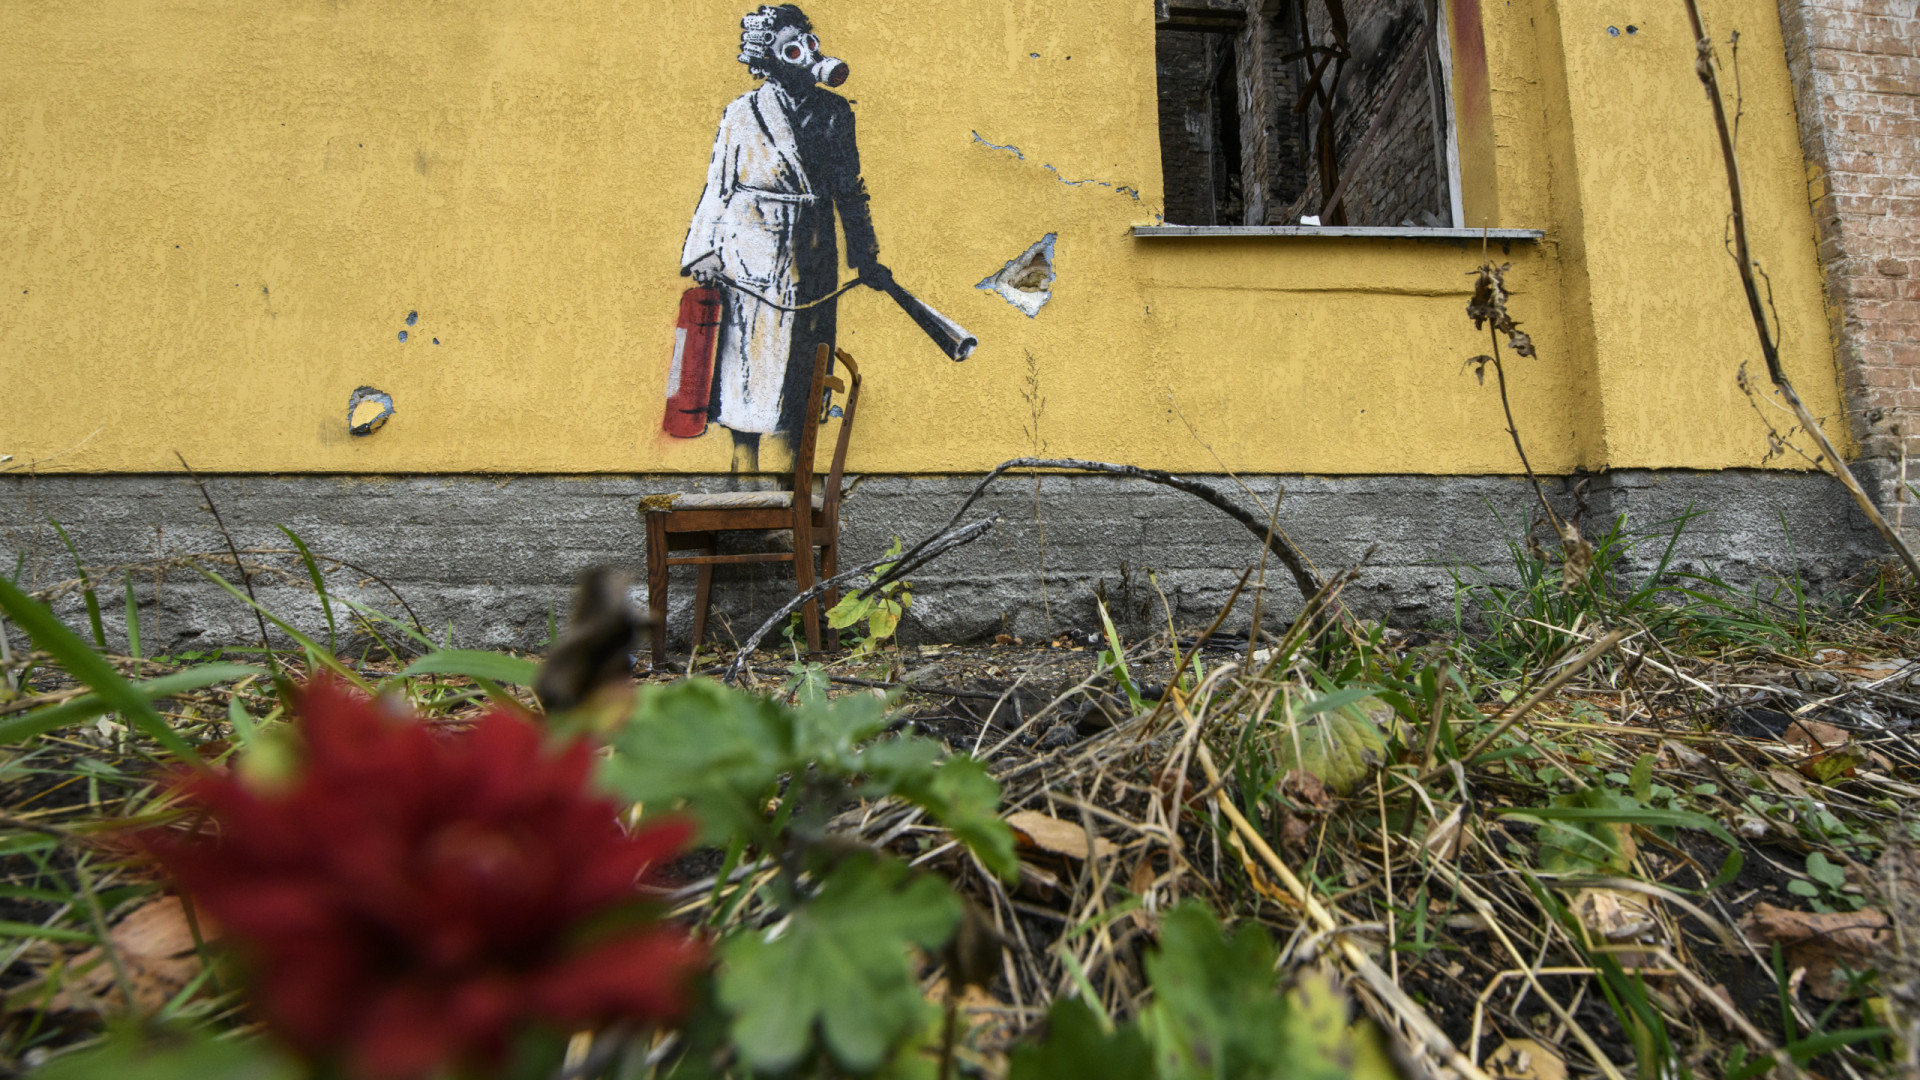 Surgem novas imagens da arte de Banksy na Ucrânia. São sete no total